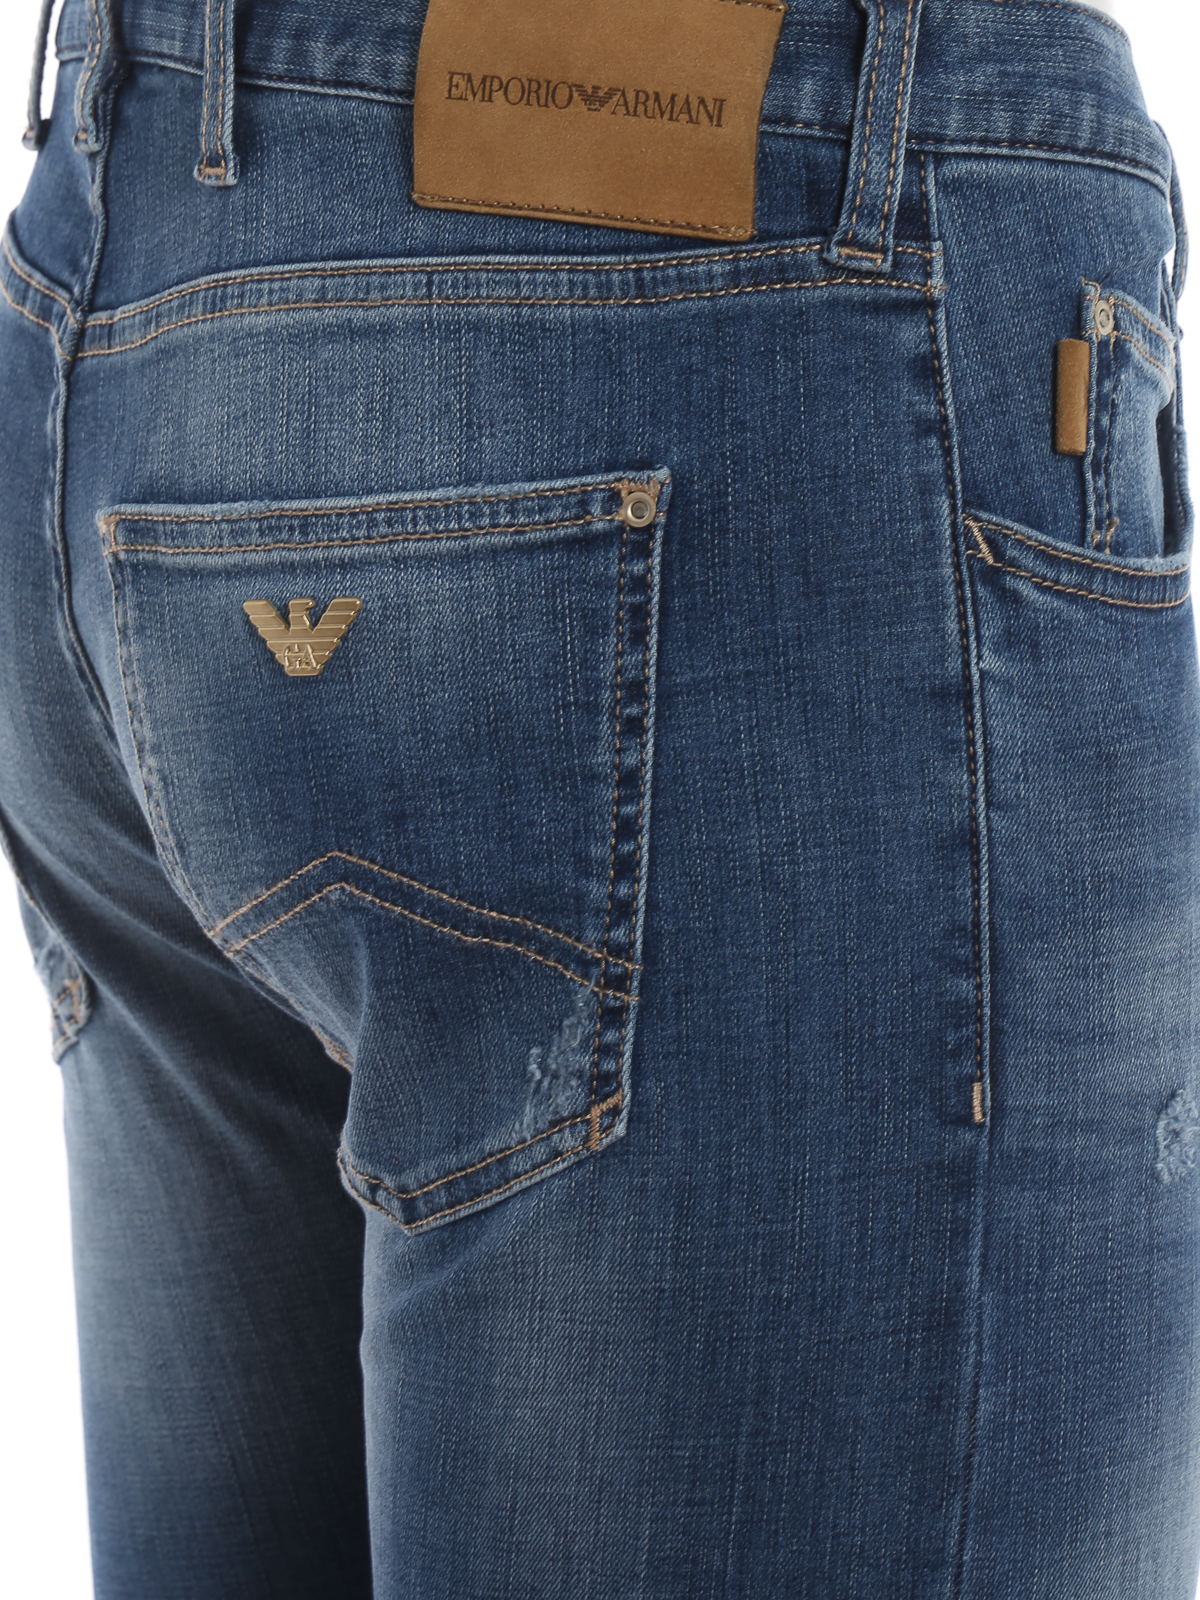 Jeans pitillos Emporio Armani - Vaqueros Pitillos - J10 -